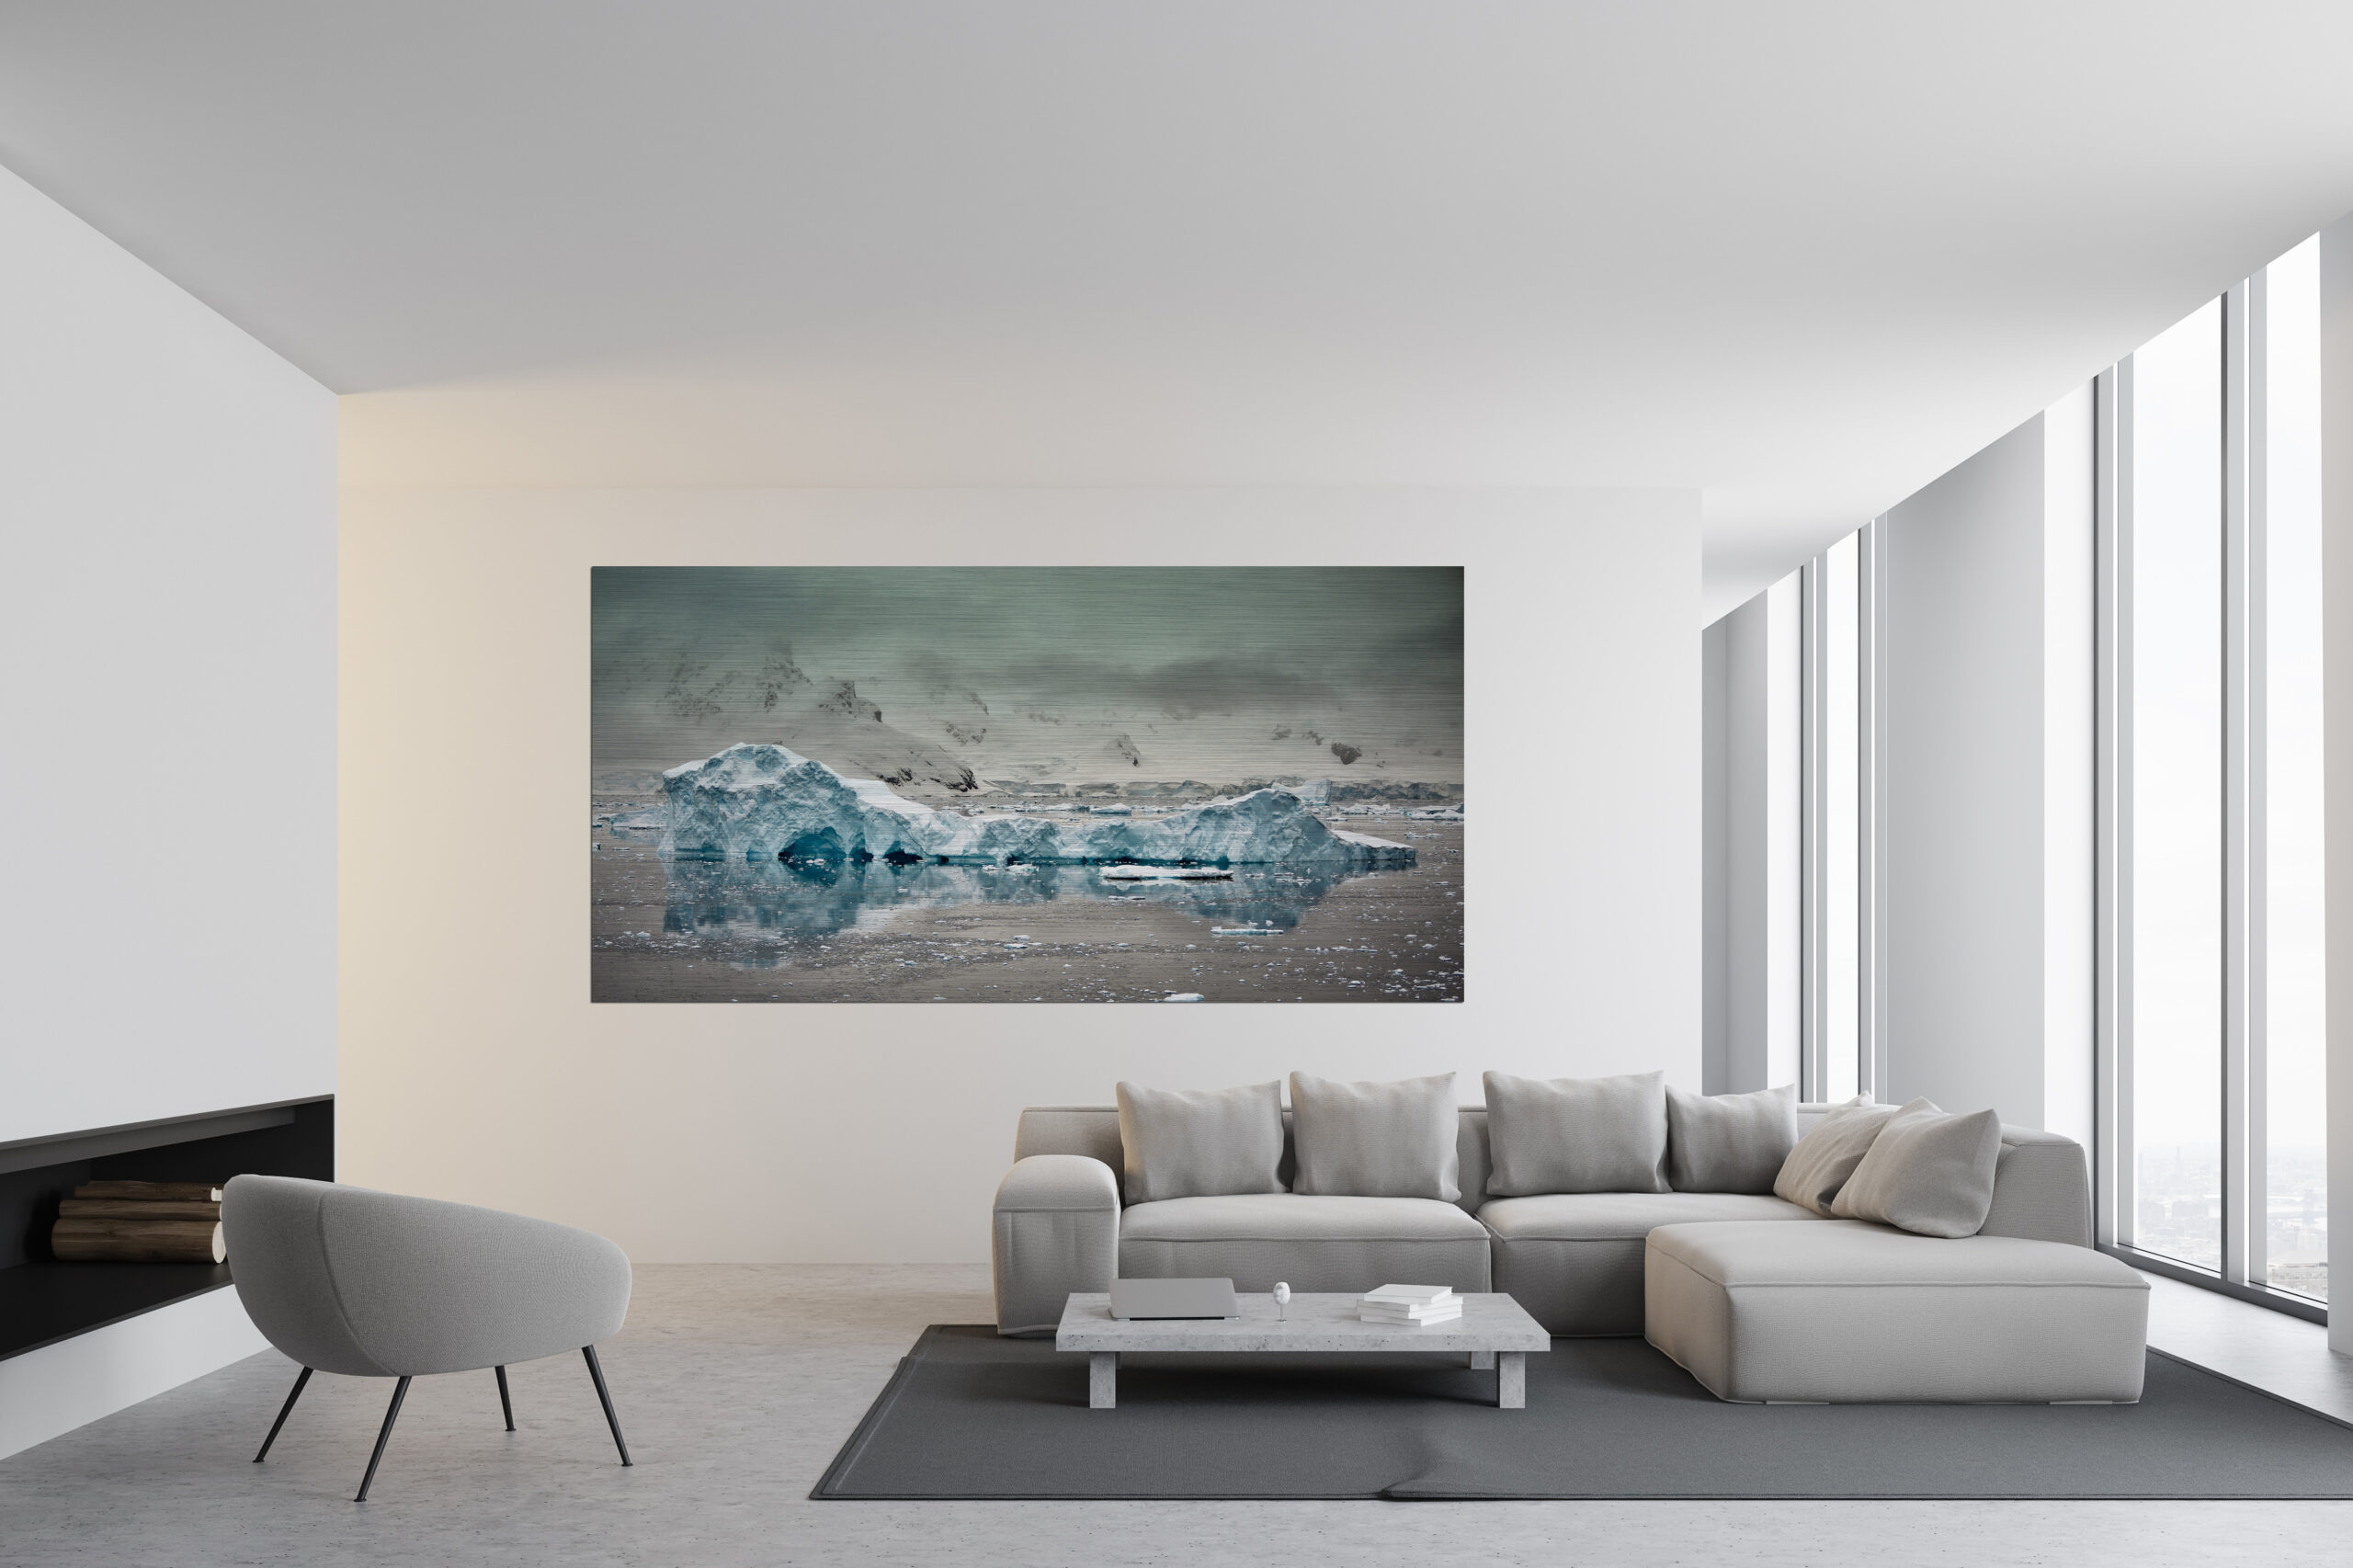 Ein Fotokunstwerk in einem Wohnzimmer, auf welchem ein Eisberg abgebildet ist.